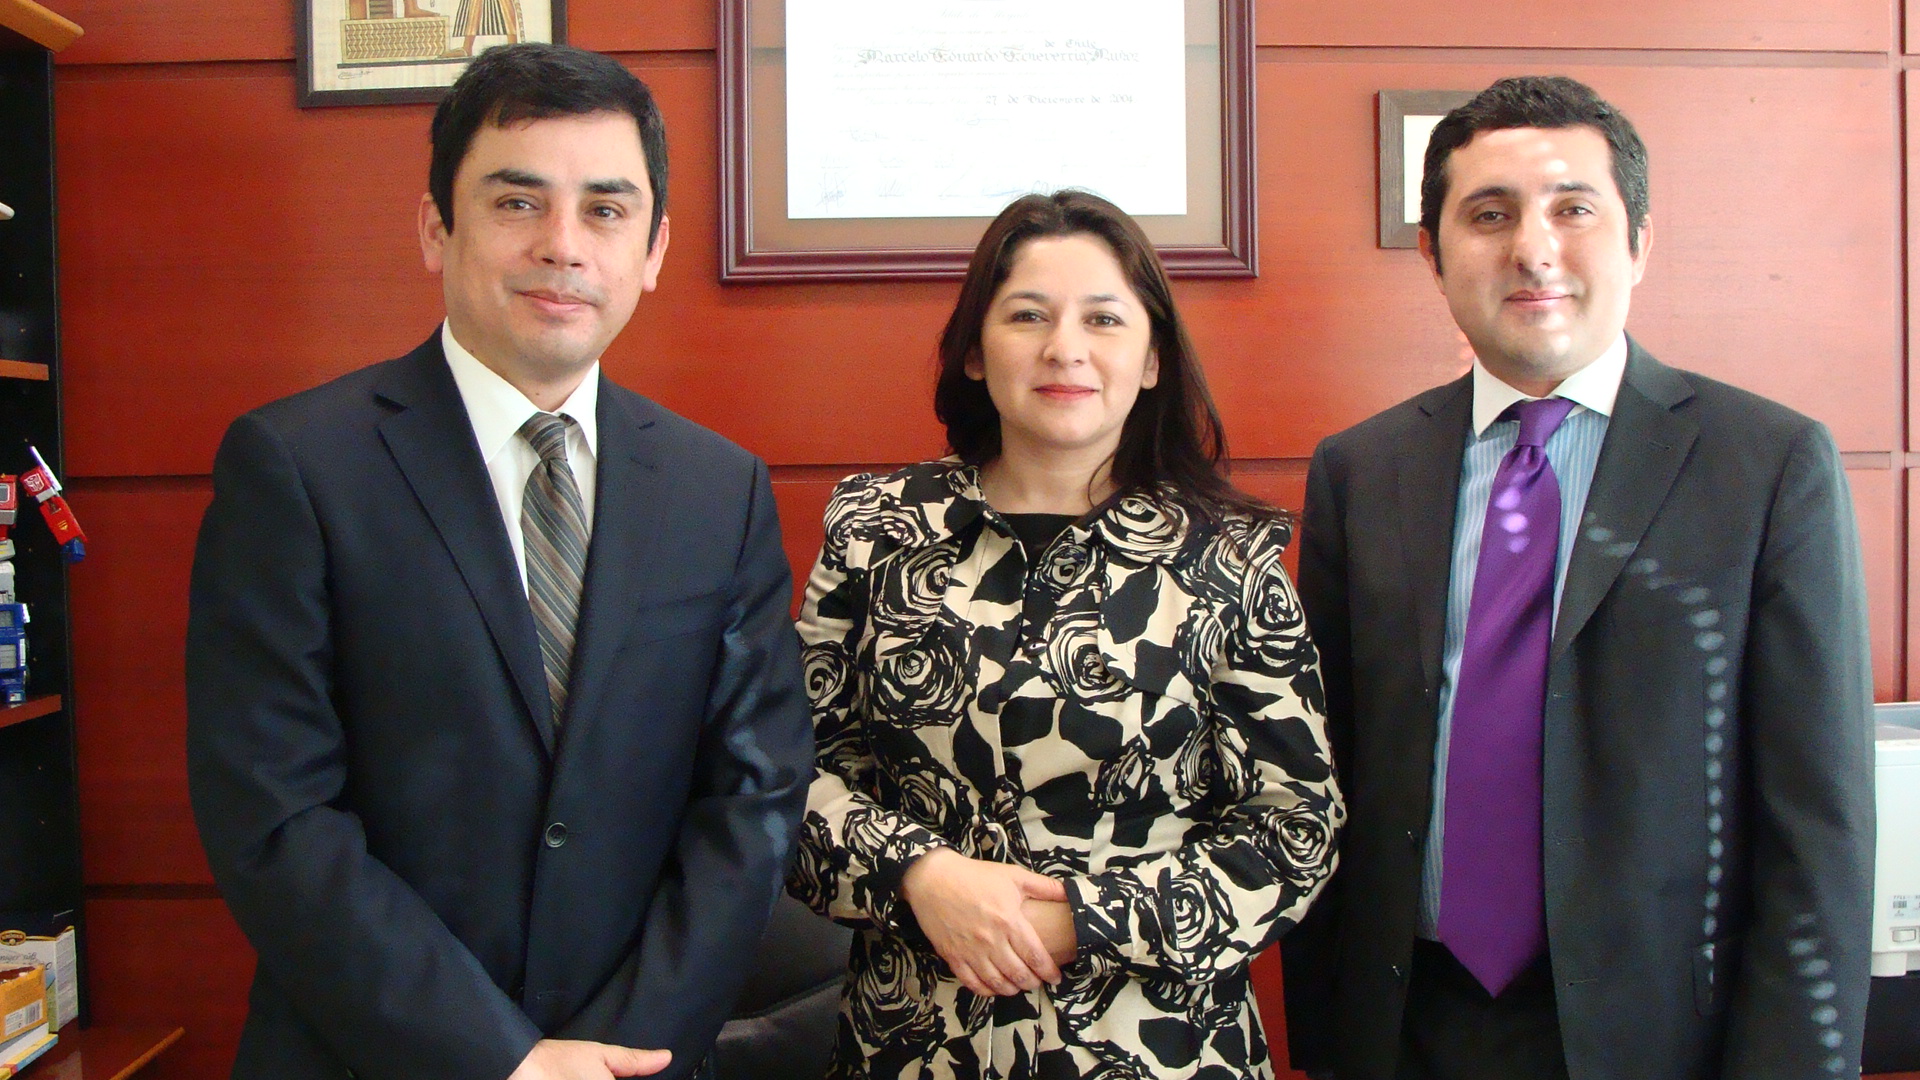 La Defensora Regional y el defensor local jefe visitaron al juez presidente del tribunal de garantía de Antofagasta, Marcelo Echeverría.